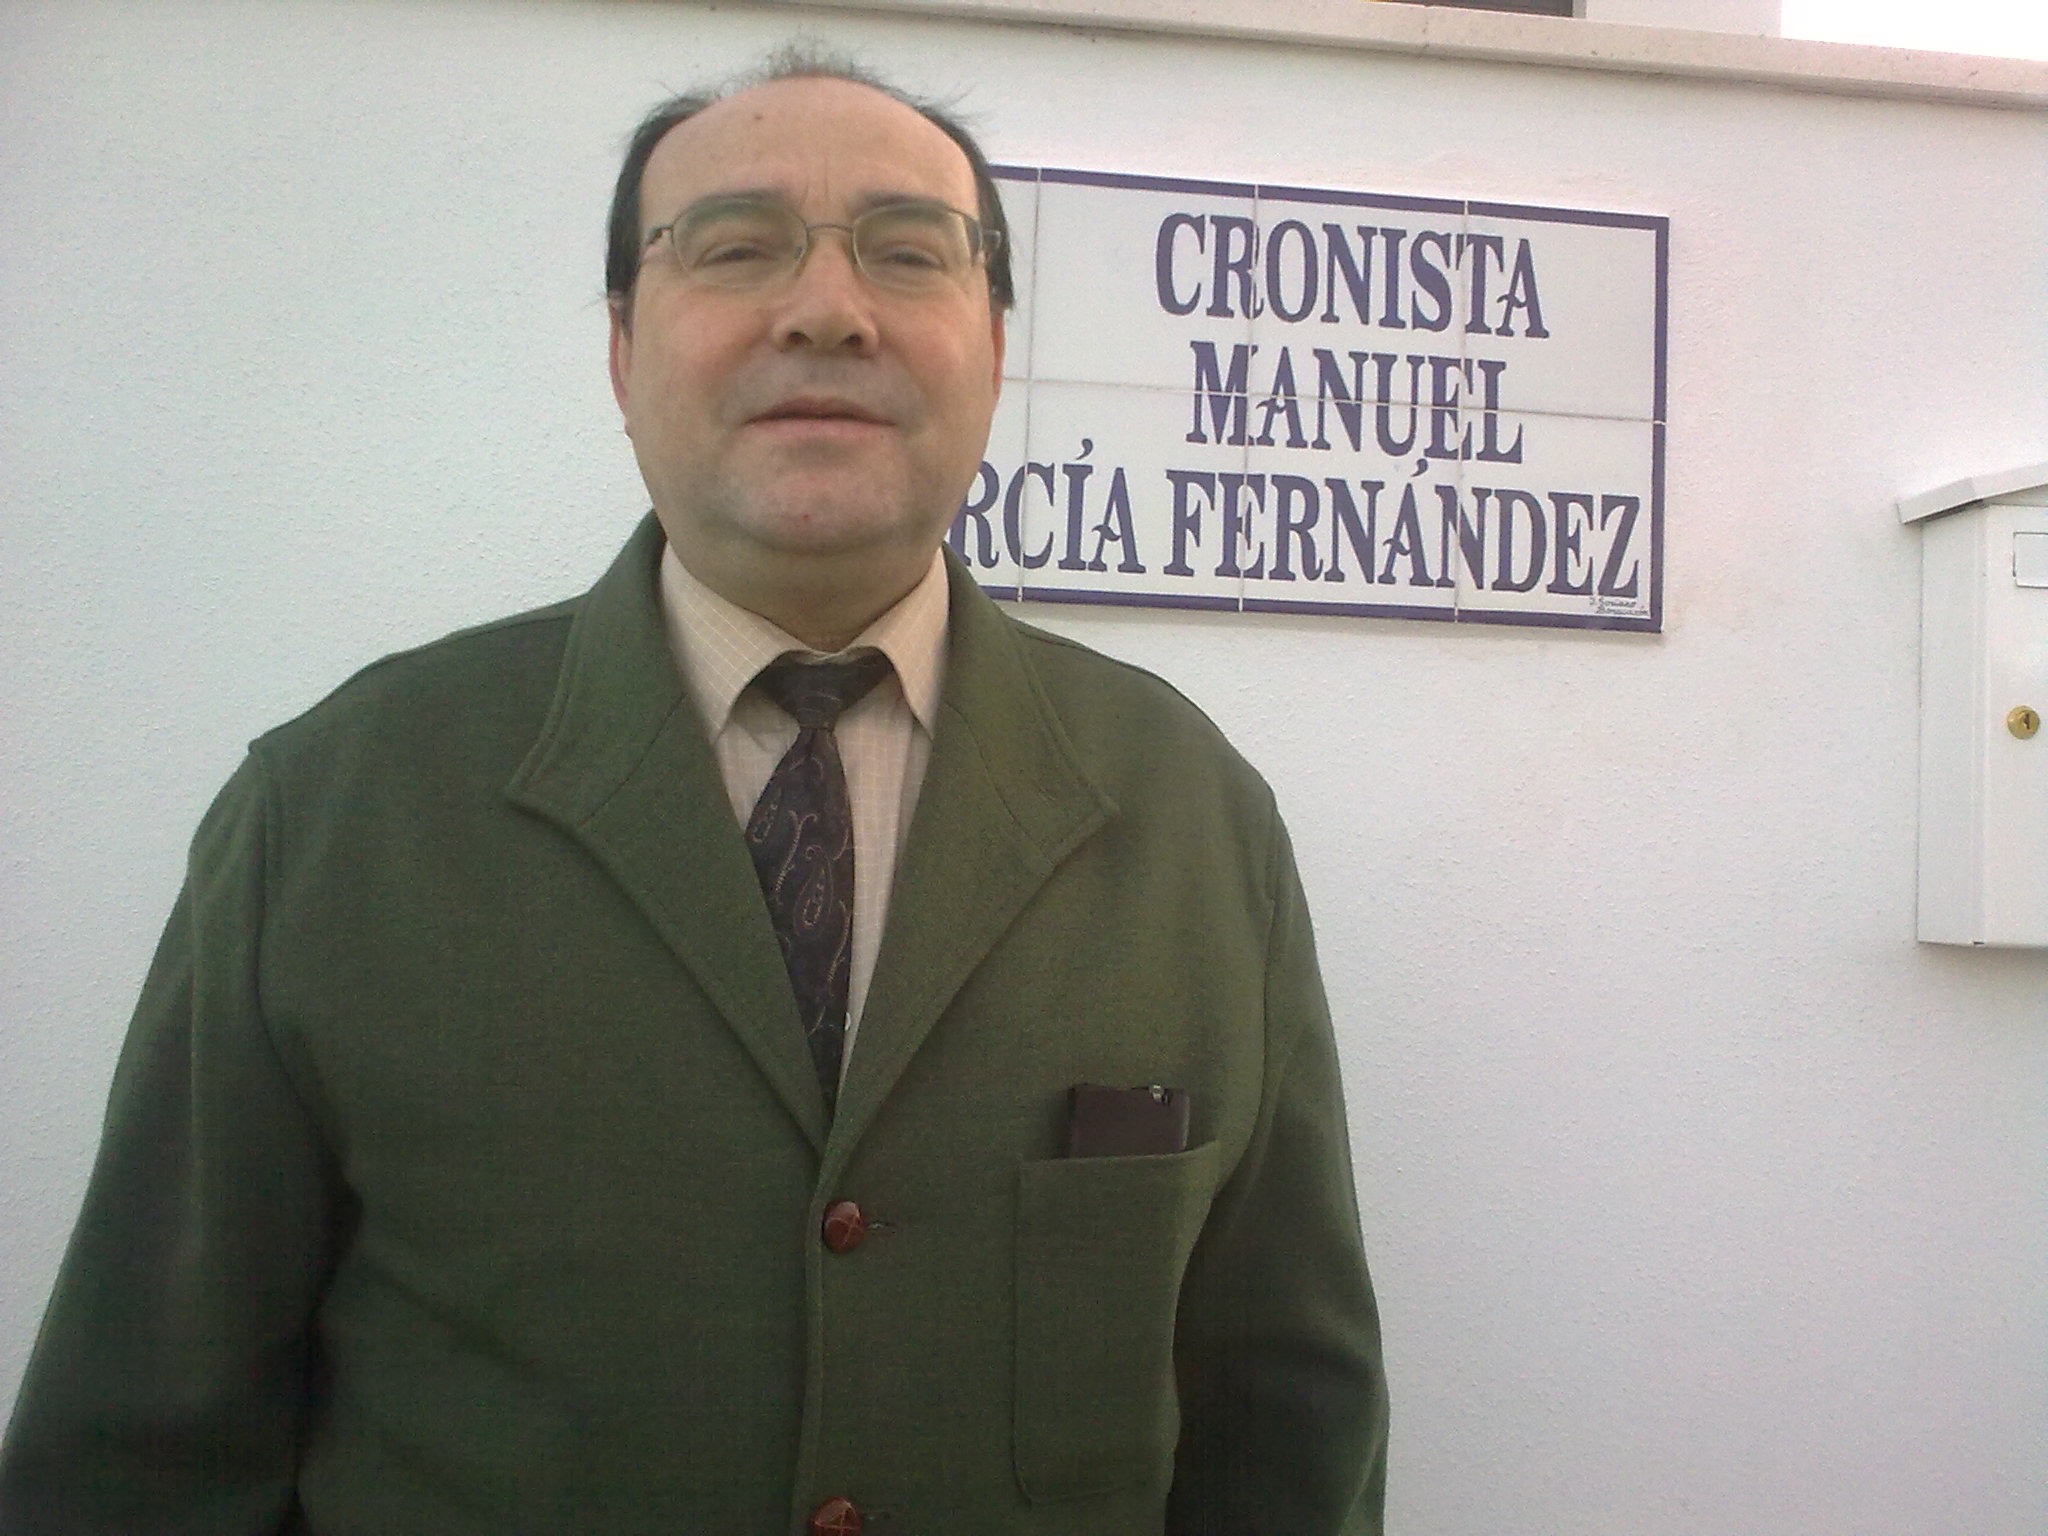 Manuel García Fernández, cronista oficial de Carrión de los Céspedes (Sevilla) en la clle que lleva su nombre.